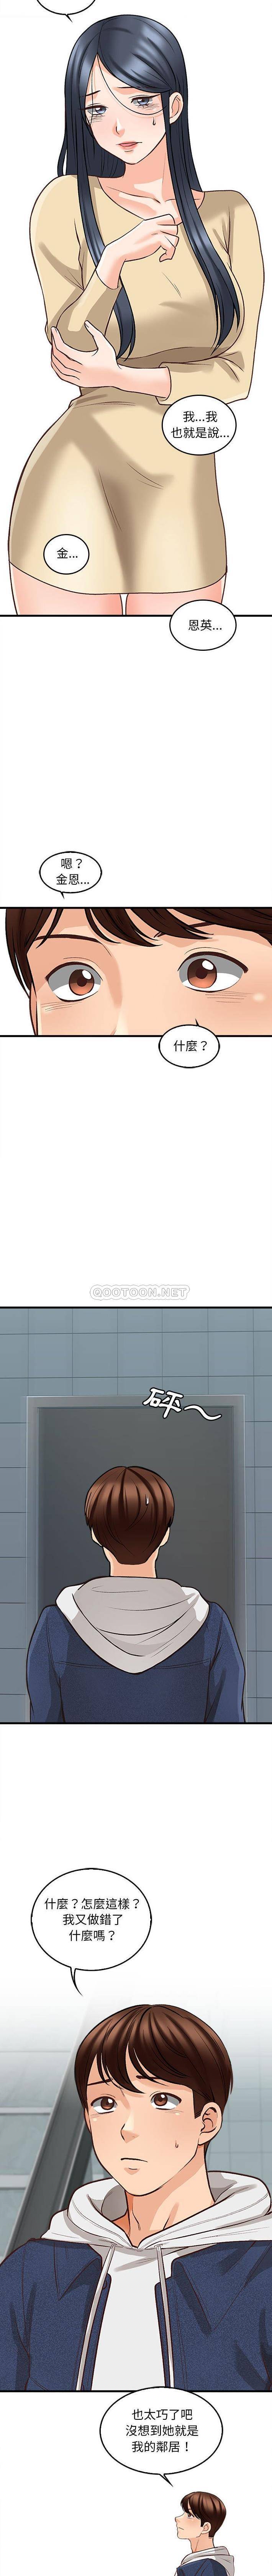 韩国污漫画 幸福公寓 第5话 14